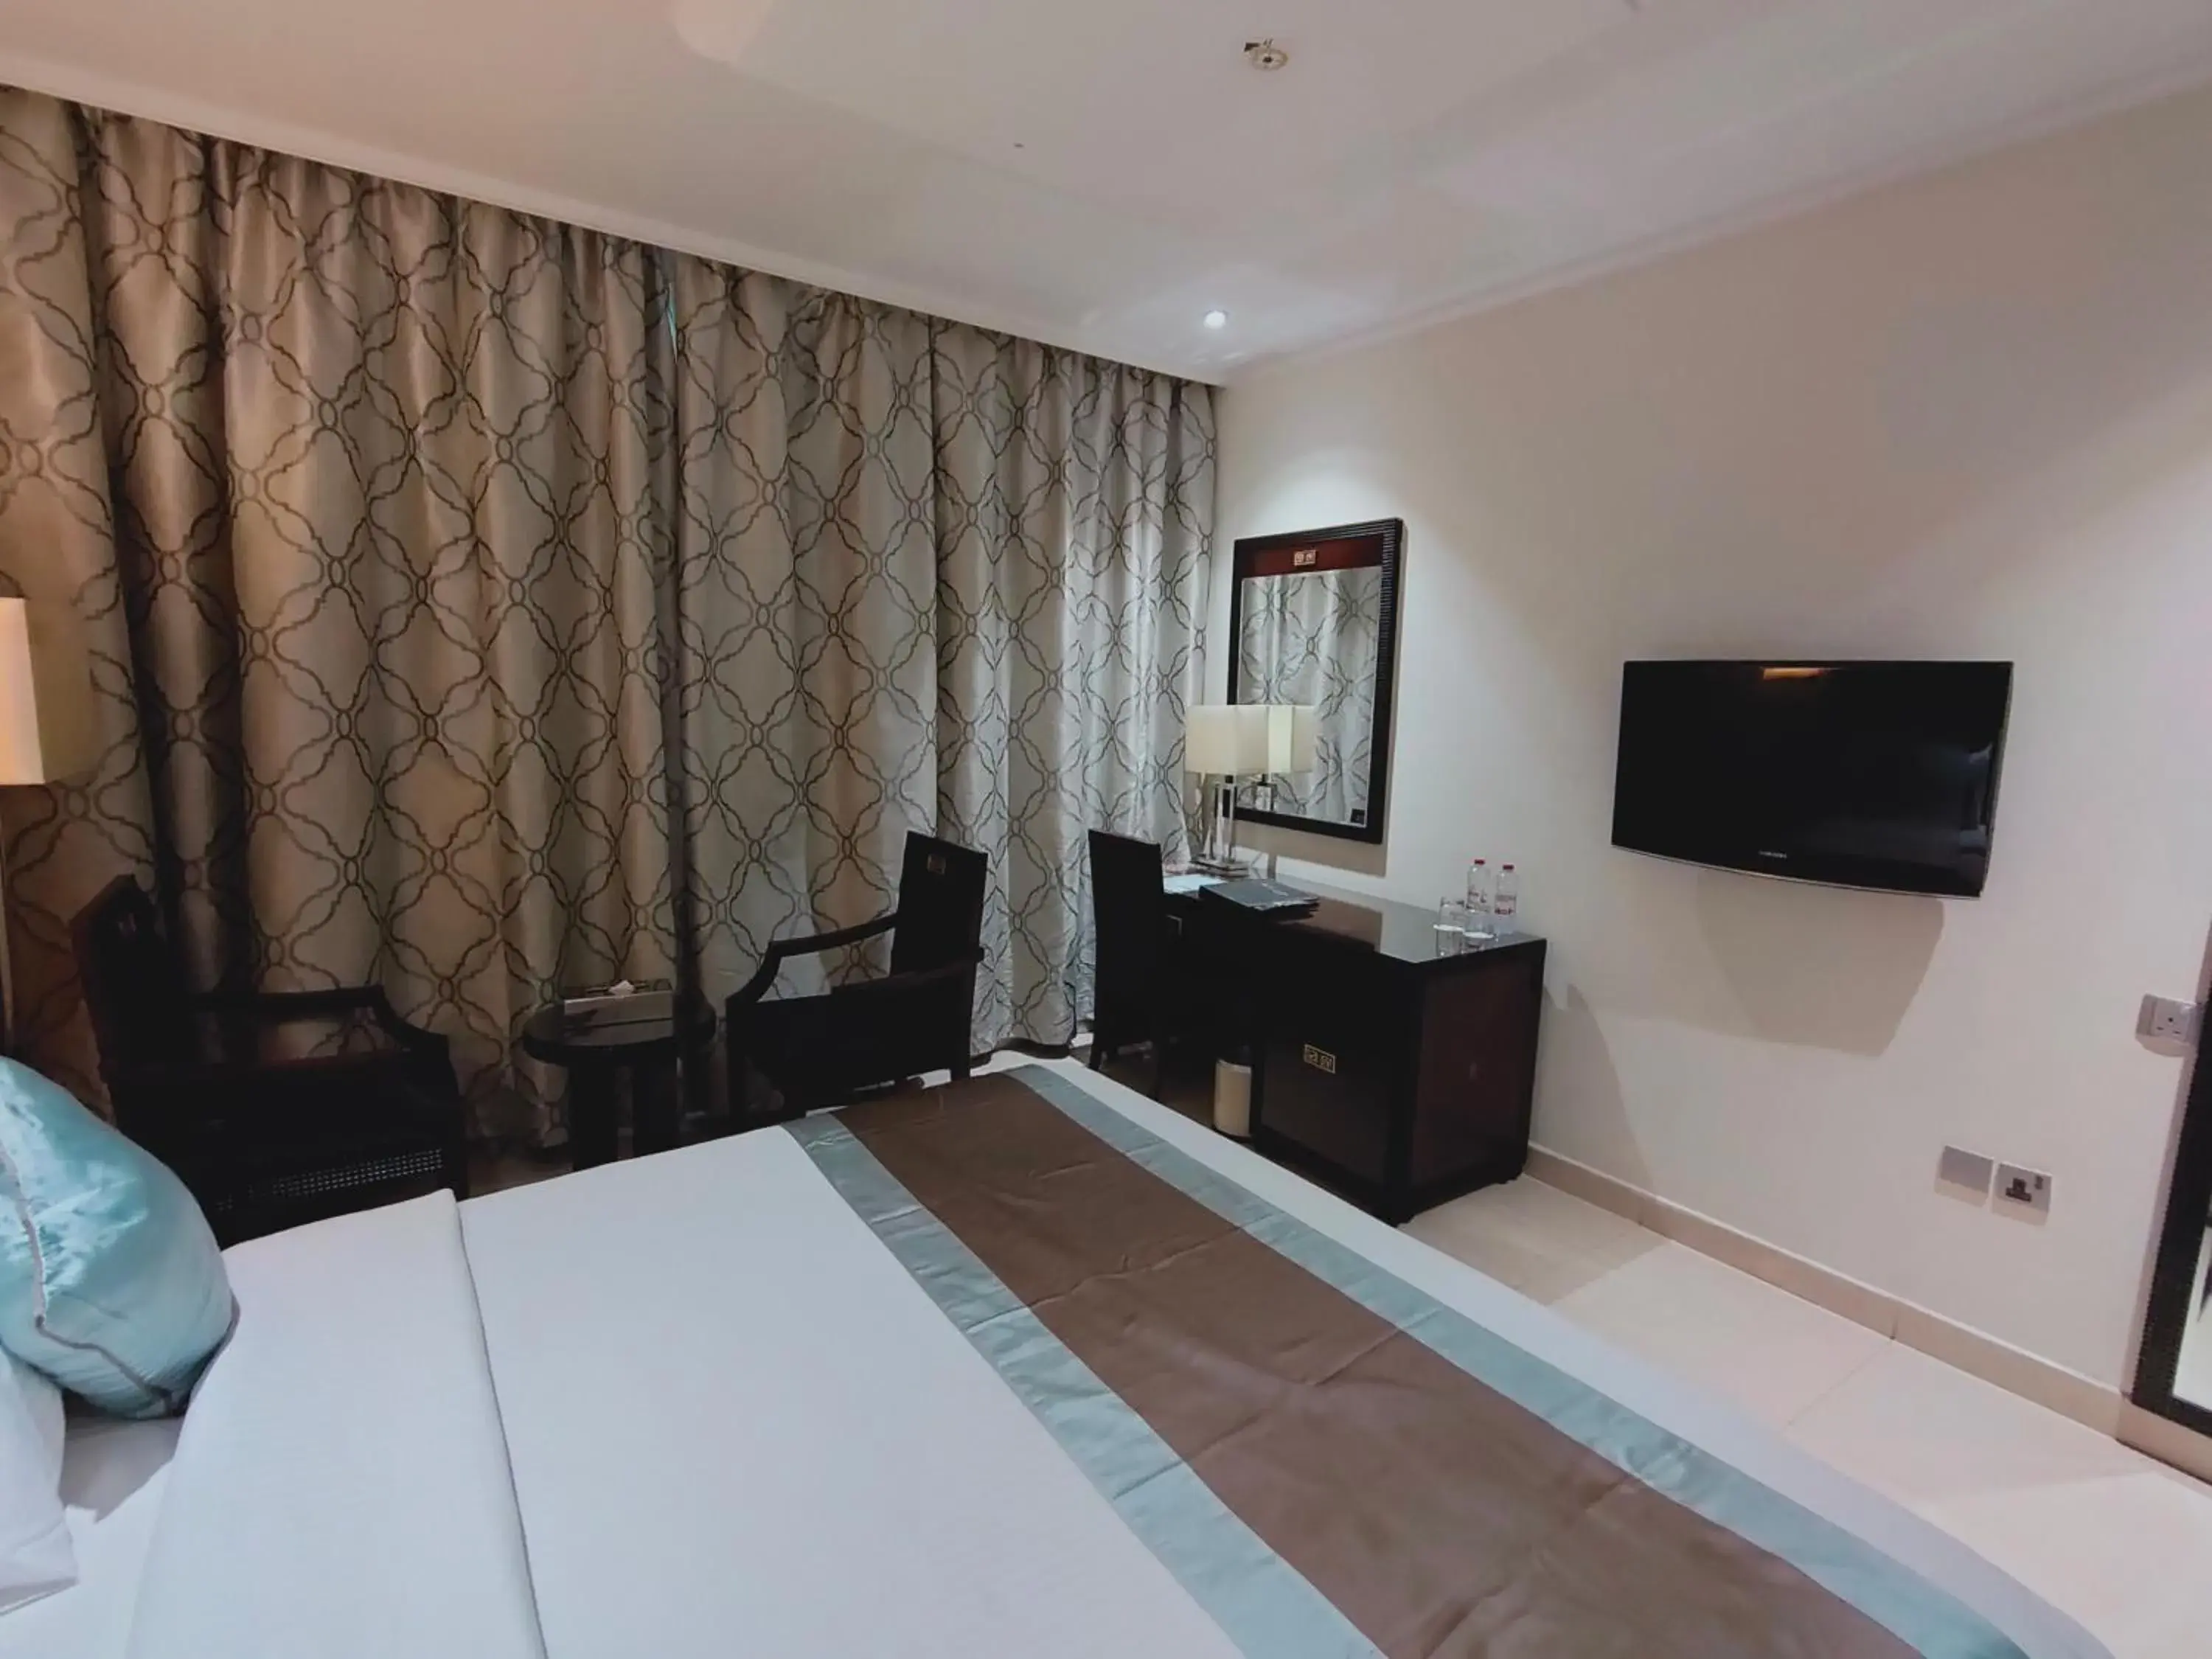 Bedroom, TV/Entertainment Center in Smana Hotel Al Raffa